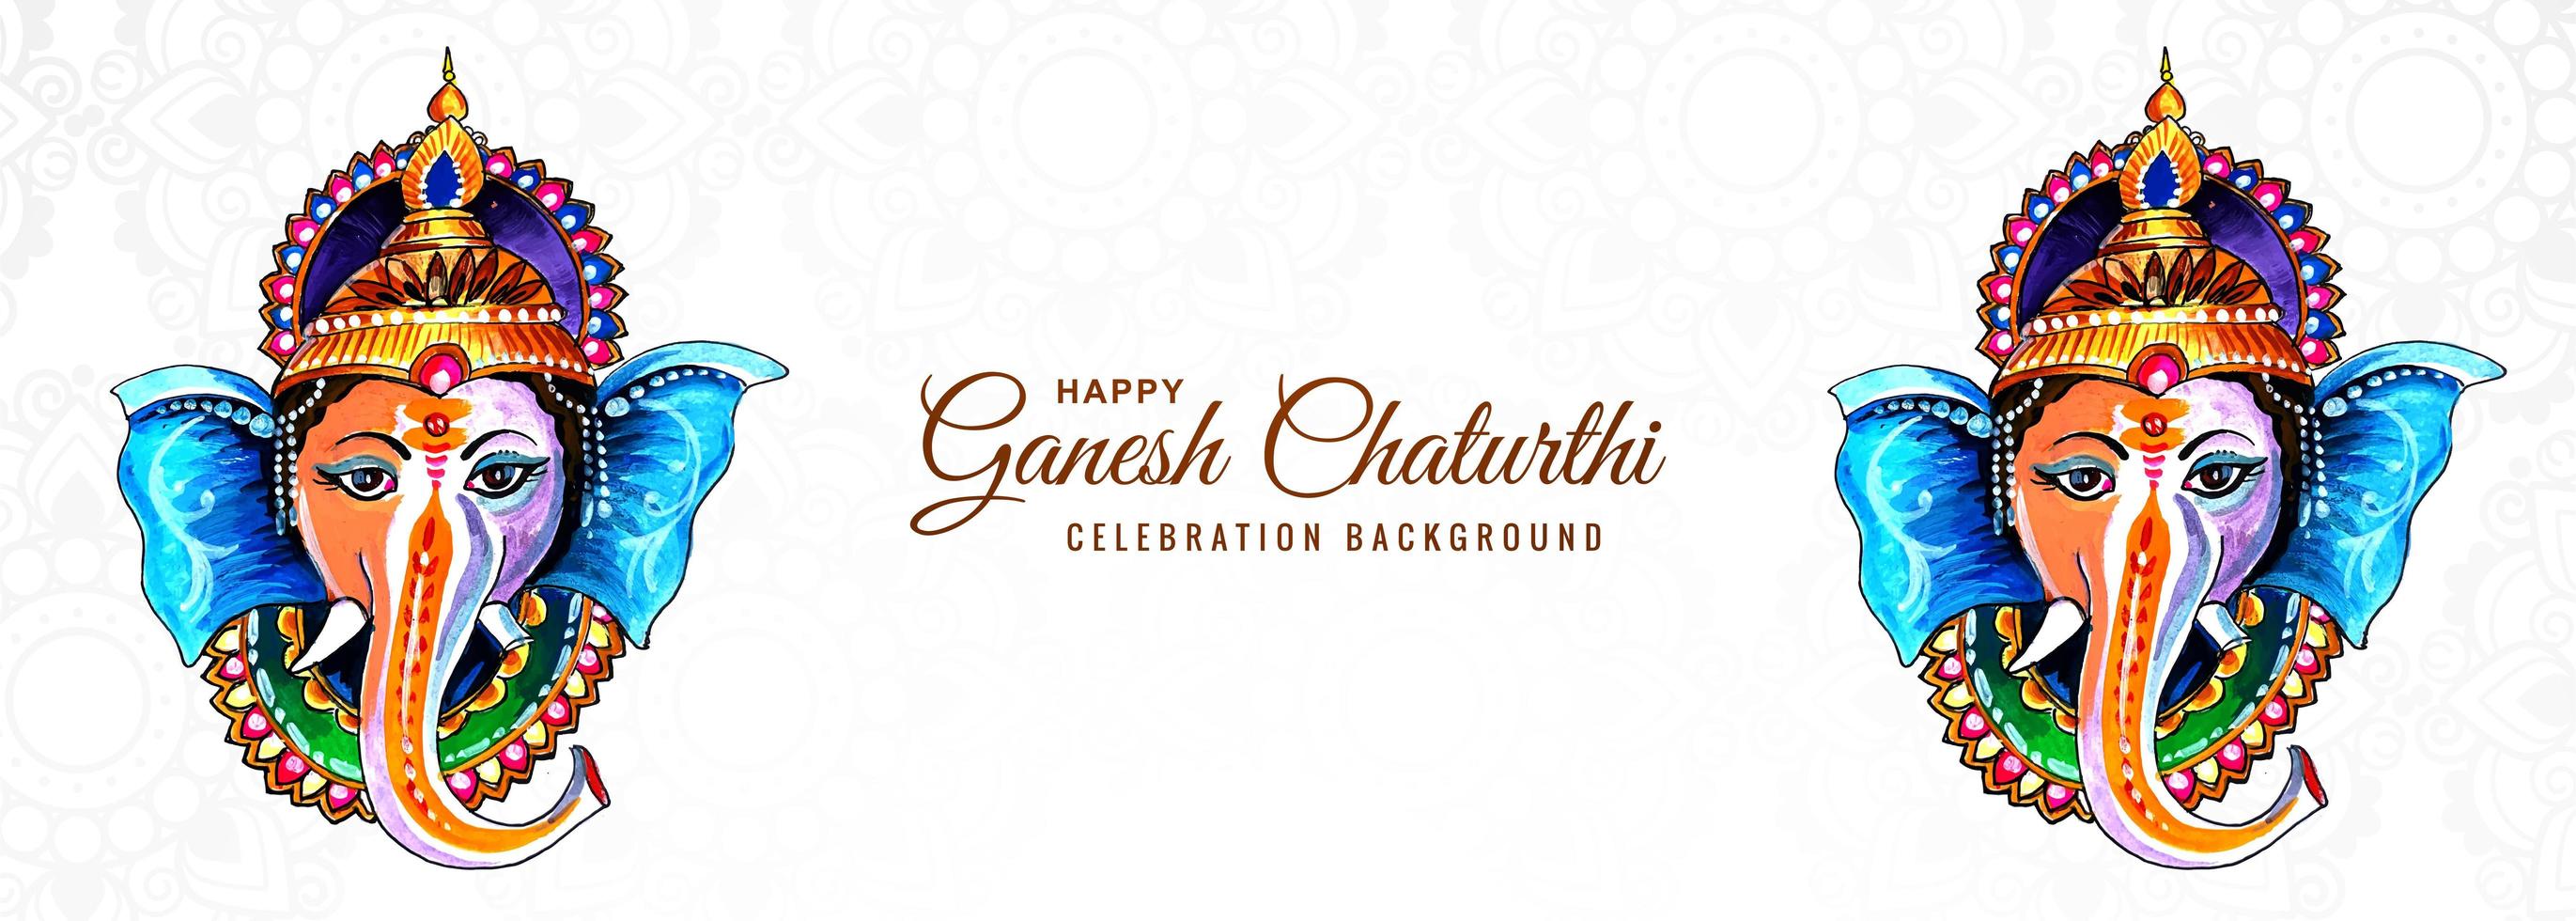 hinduisk gud ganesha för glad ganesh chaturthi festival banner vektor